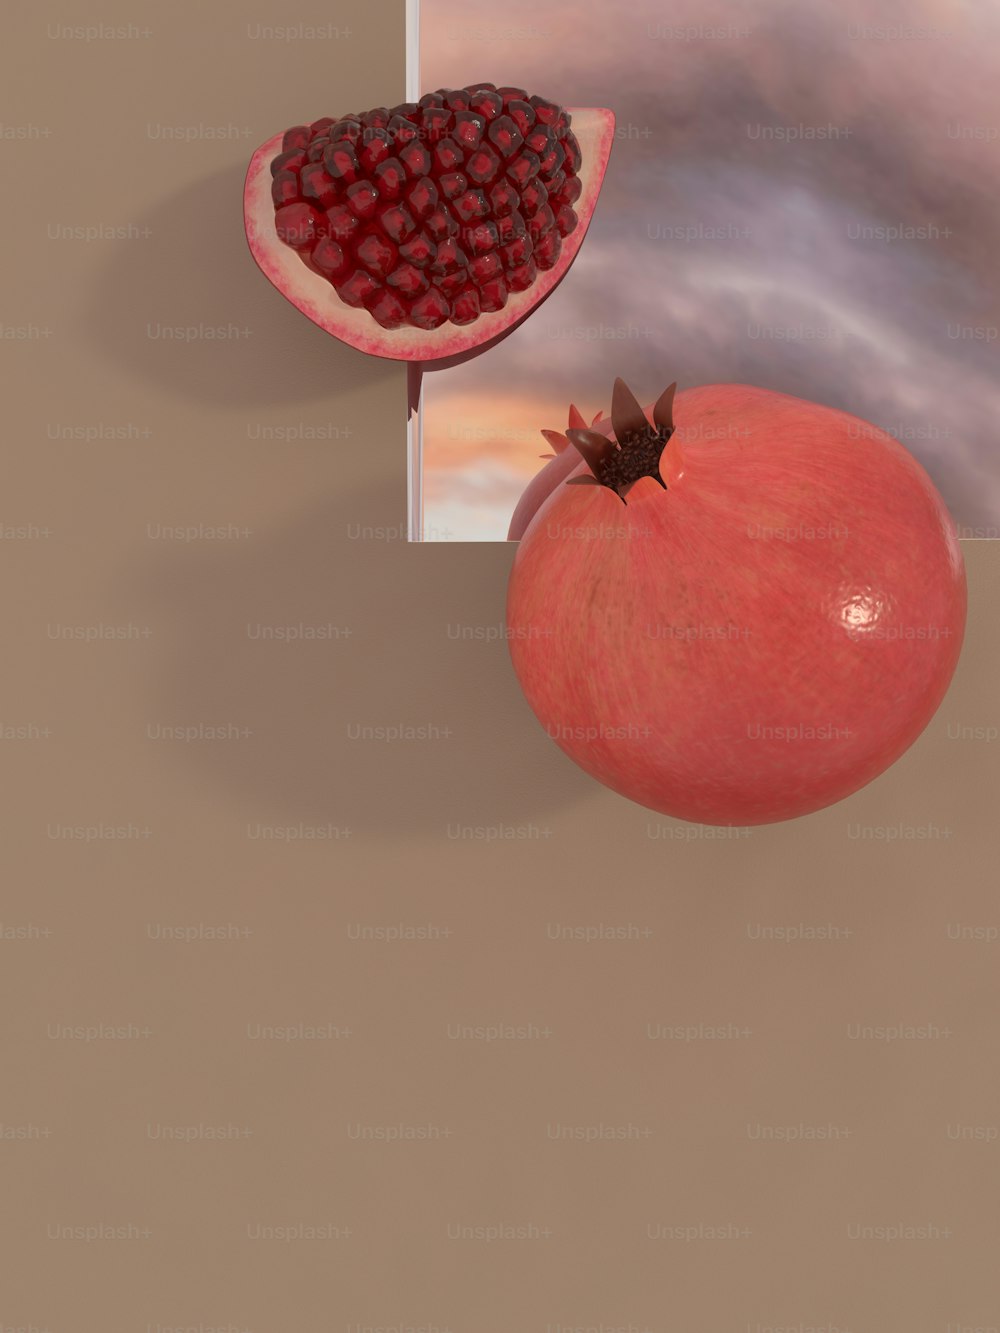 ザクロと果物の写真